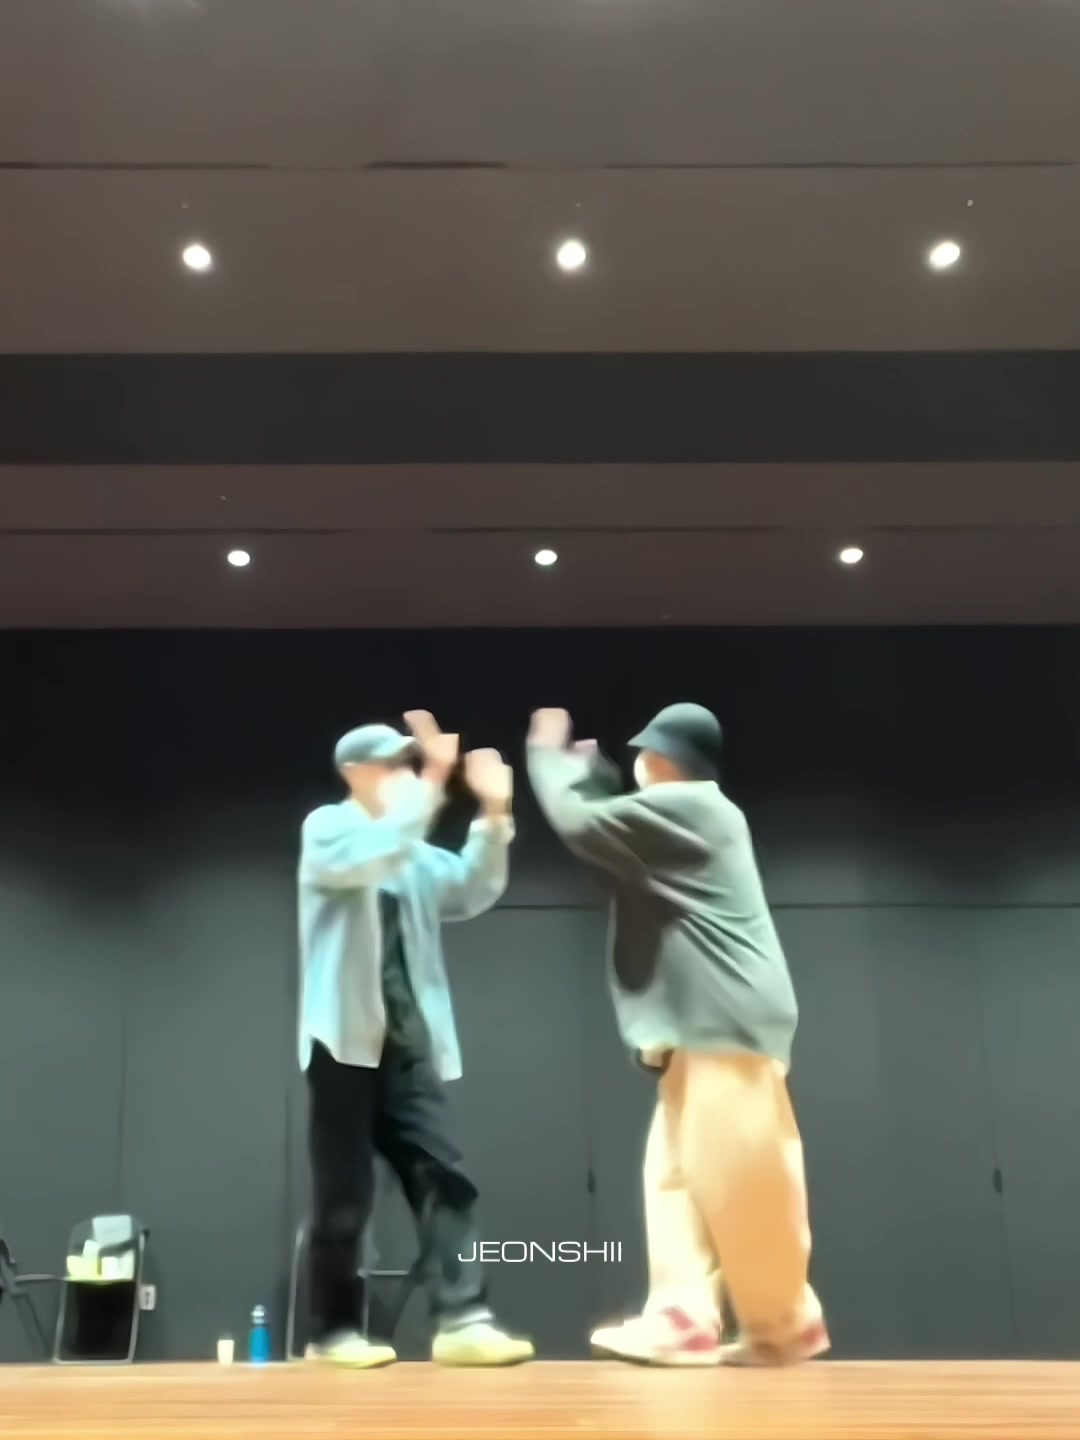 他的家庭舞蹈老师taesung上传了一段他们为jungkook的生日一起跳舞的视频